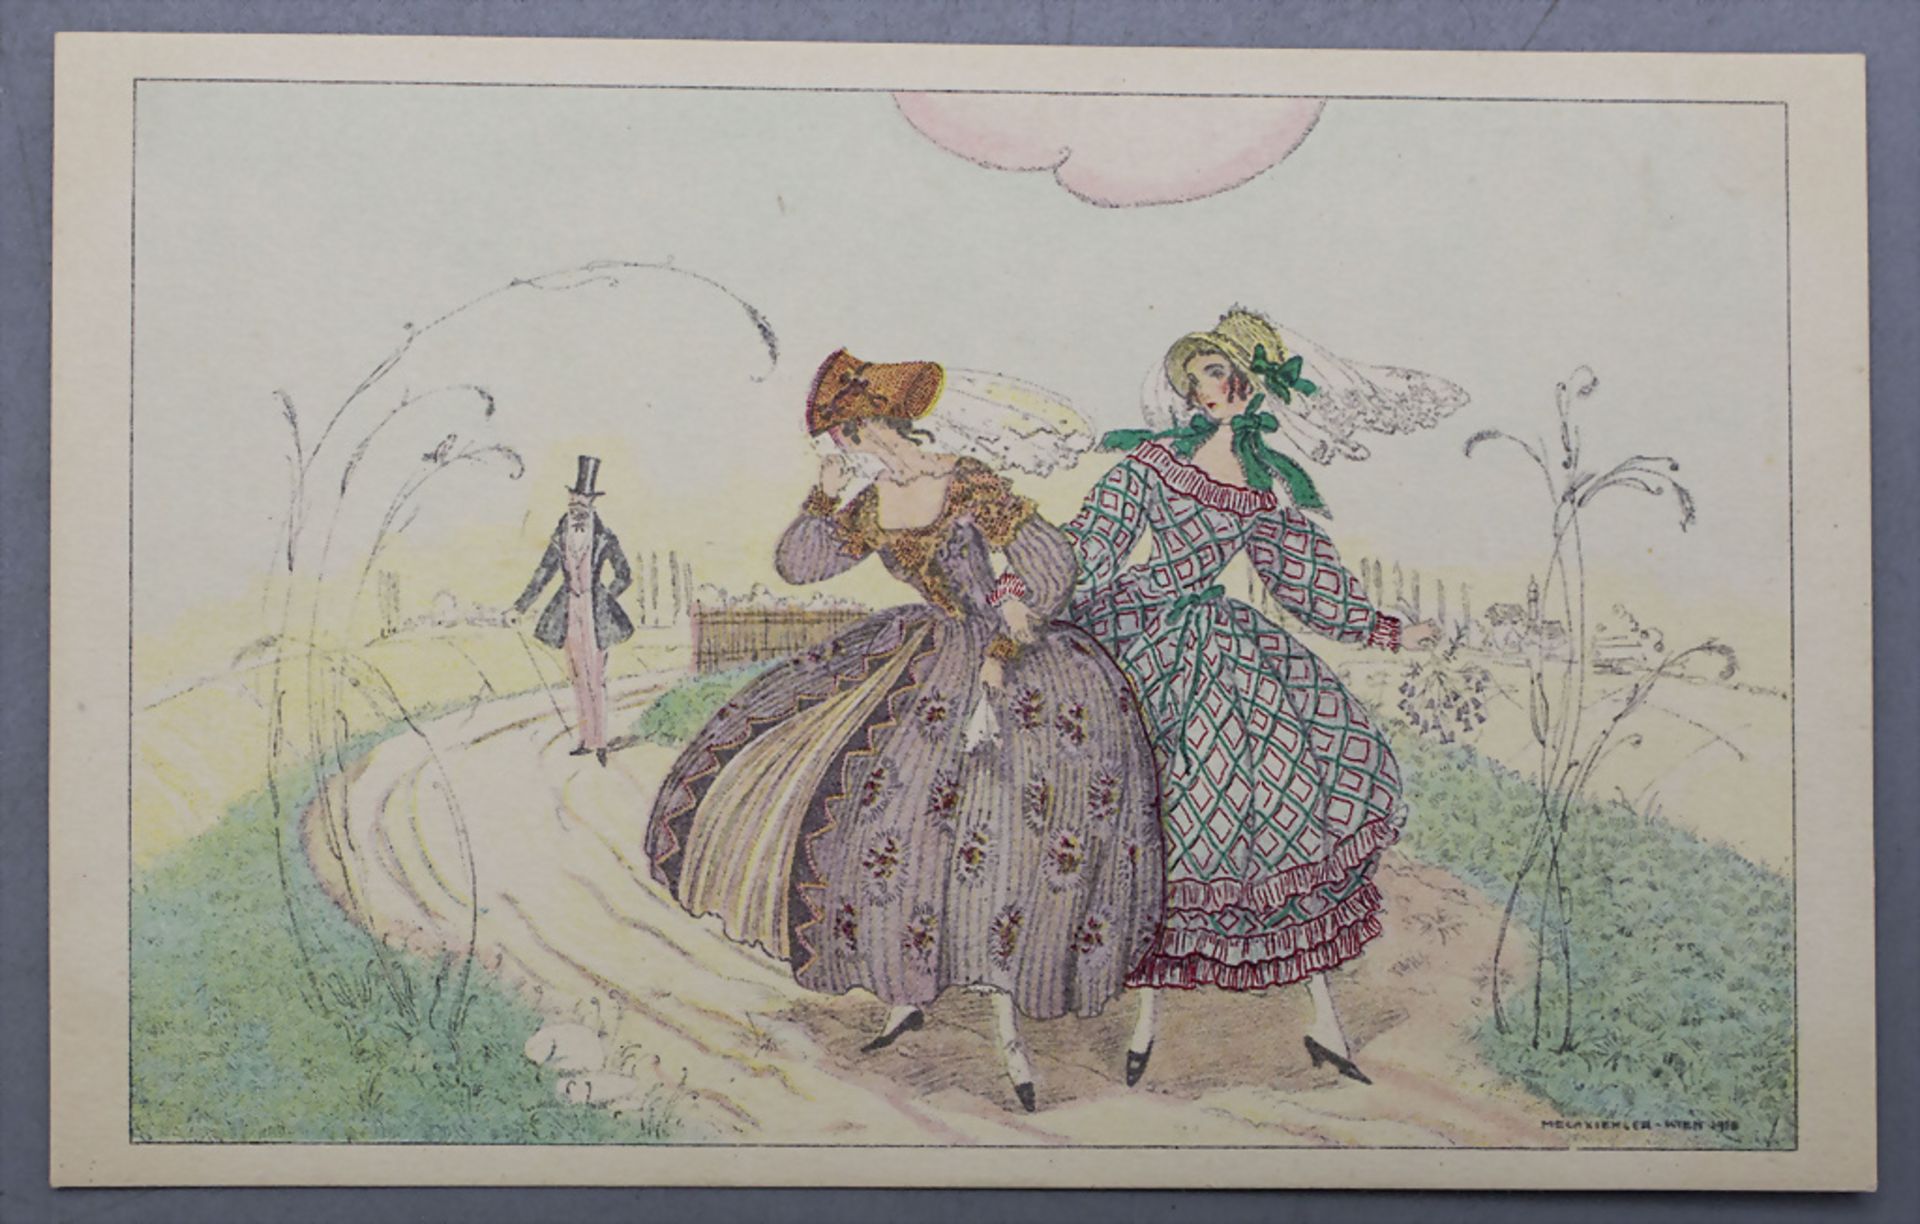 2 Jugendstil Künstlerkarten / 2 Art Nouveau artist postcards, Mela Koehler, Wien, um 1900 - Image 3 of 5